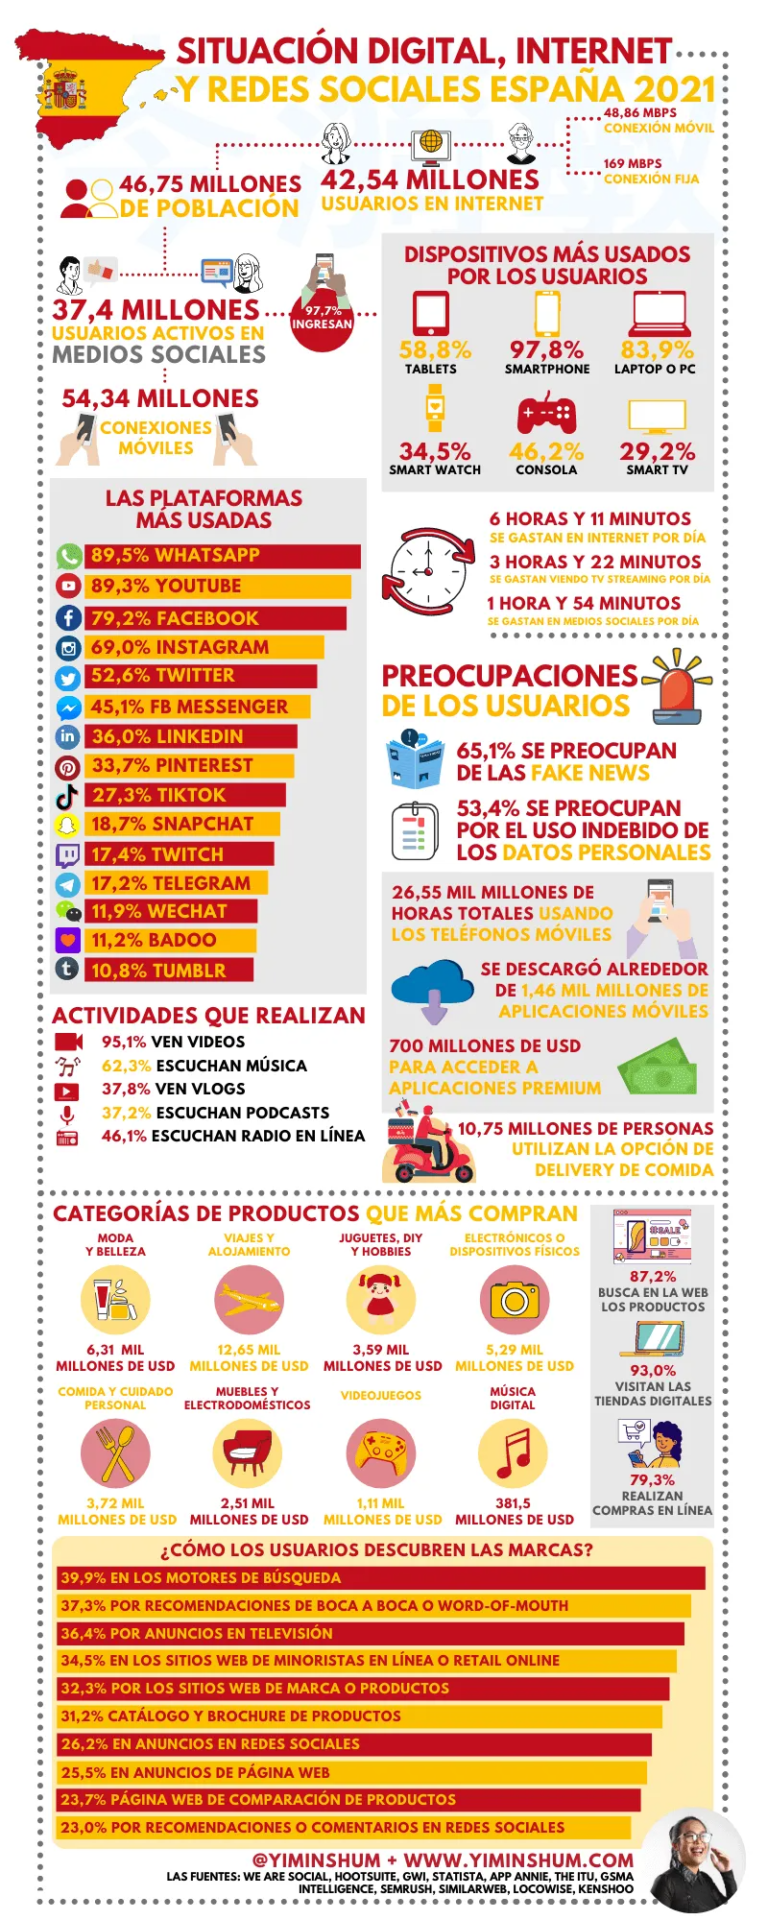 Infografia - Mundo digital y redes sociales en España 2021 #infografia #infographic #socialmedia - TICs y Formación